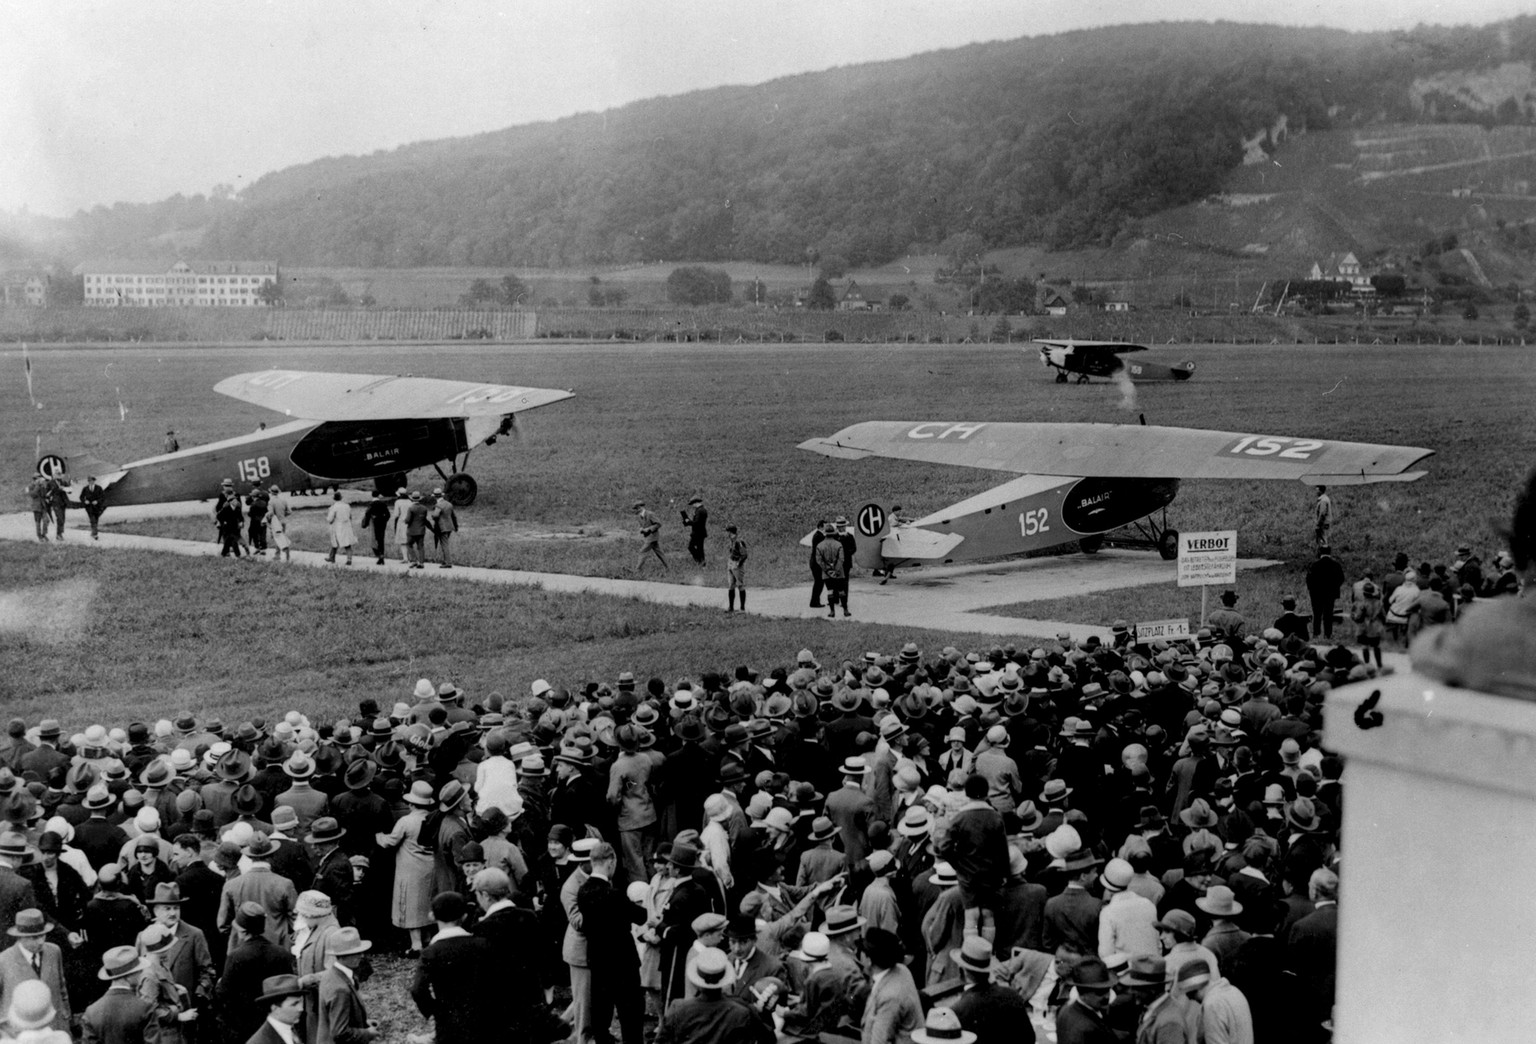 Faszination Fliegen ca. 1928: Eine&nbsp;CH-152 Fokker F-III, eine CH-158 Fokker F-VIIa und eine CH-159 Fokker F-VIIa auf dem Flugplatz&nbsp;Basel-Birsfelden.<br data-editable="remove">